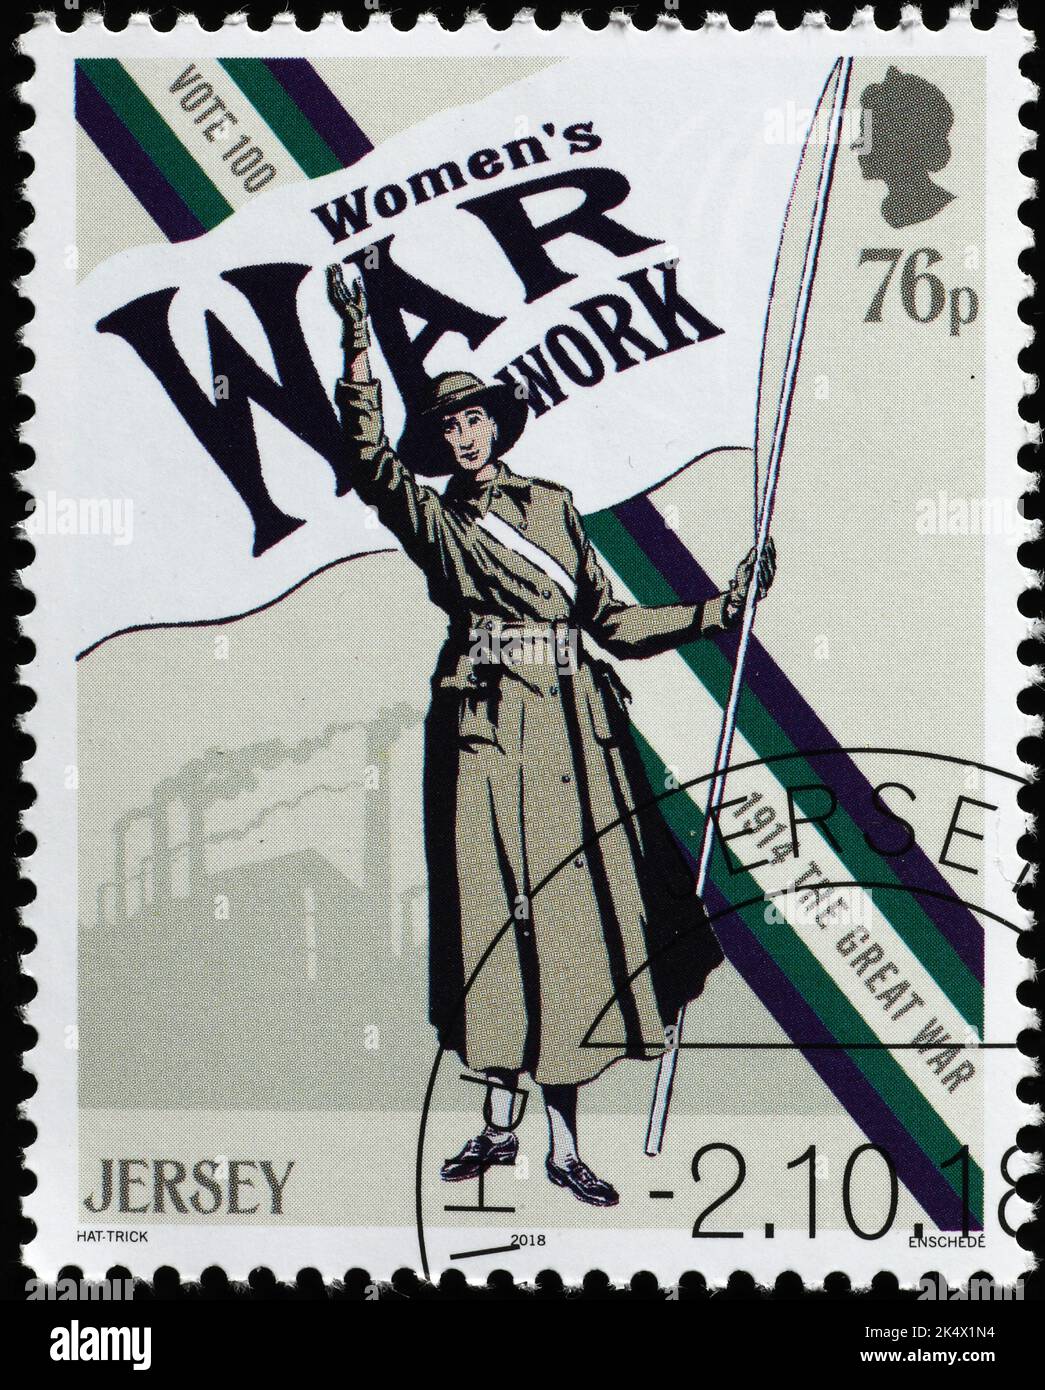 Lavoro di guerra delle donne celebrato sul francobollo da Jersey Foto Stock